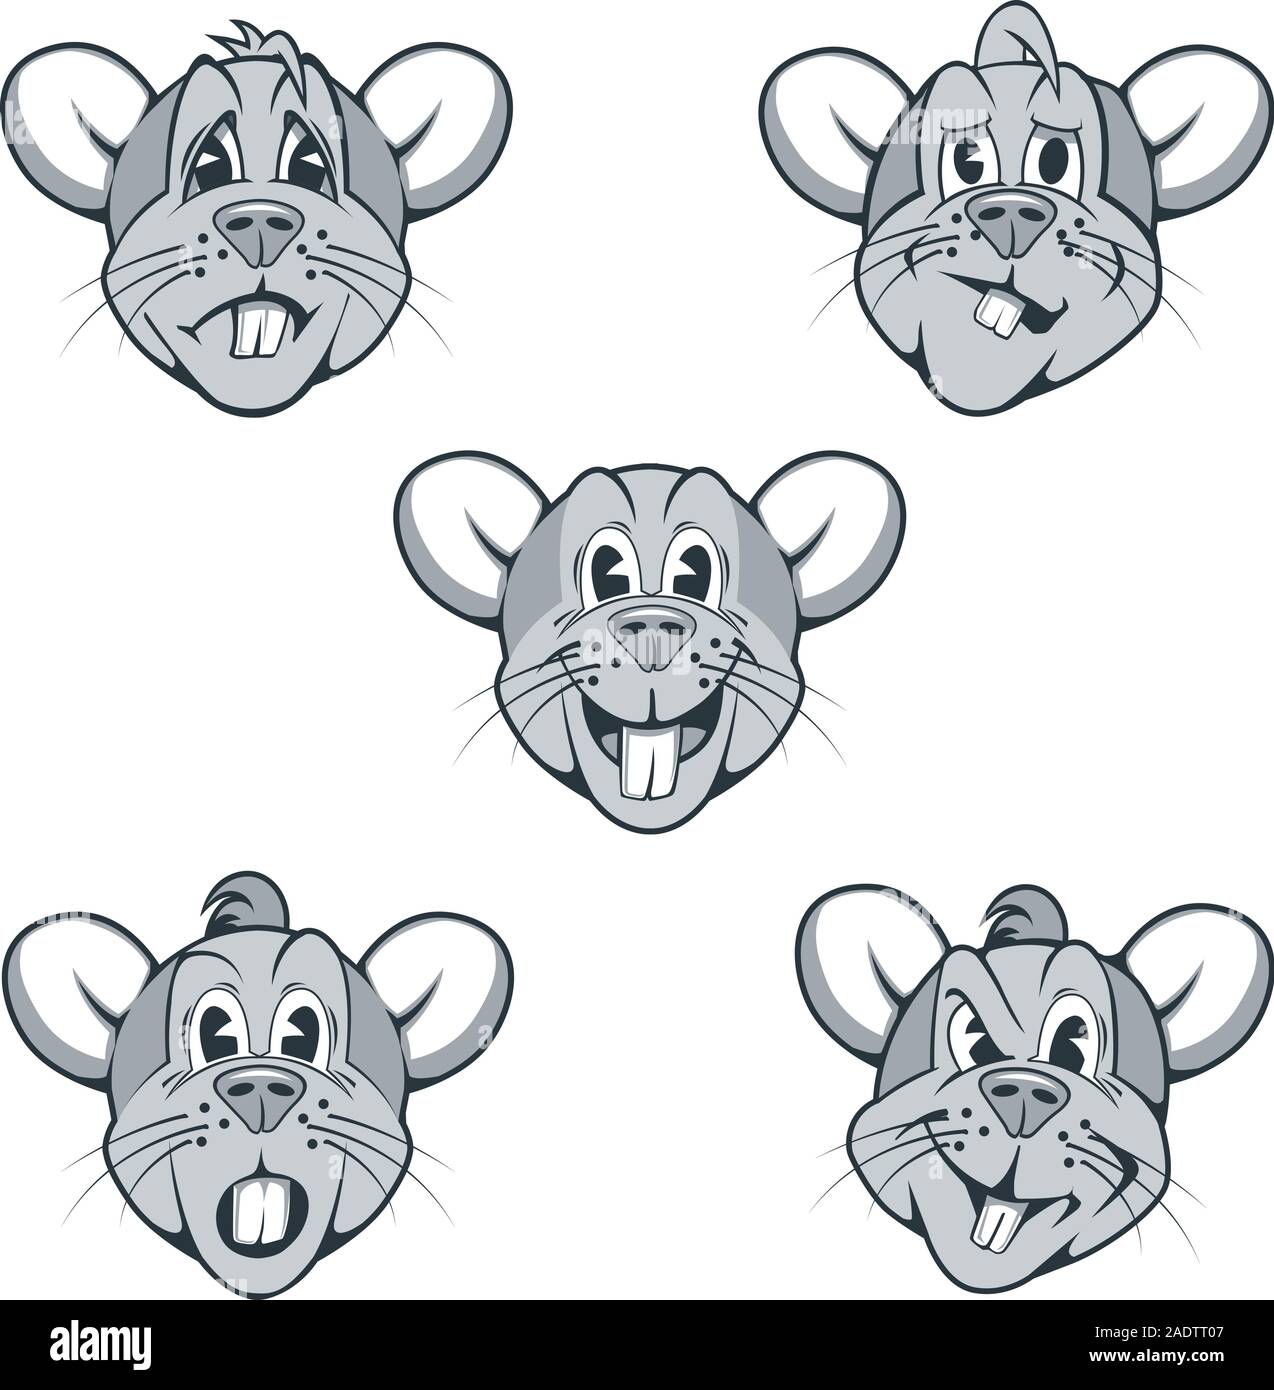 Ensemble de personnages de rats avec différentes expressions du visage Illustration de Vecteur